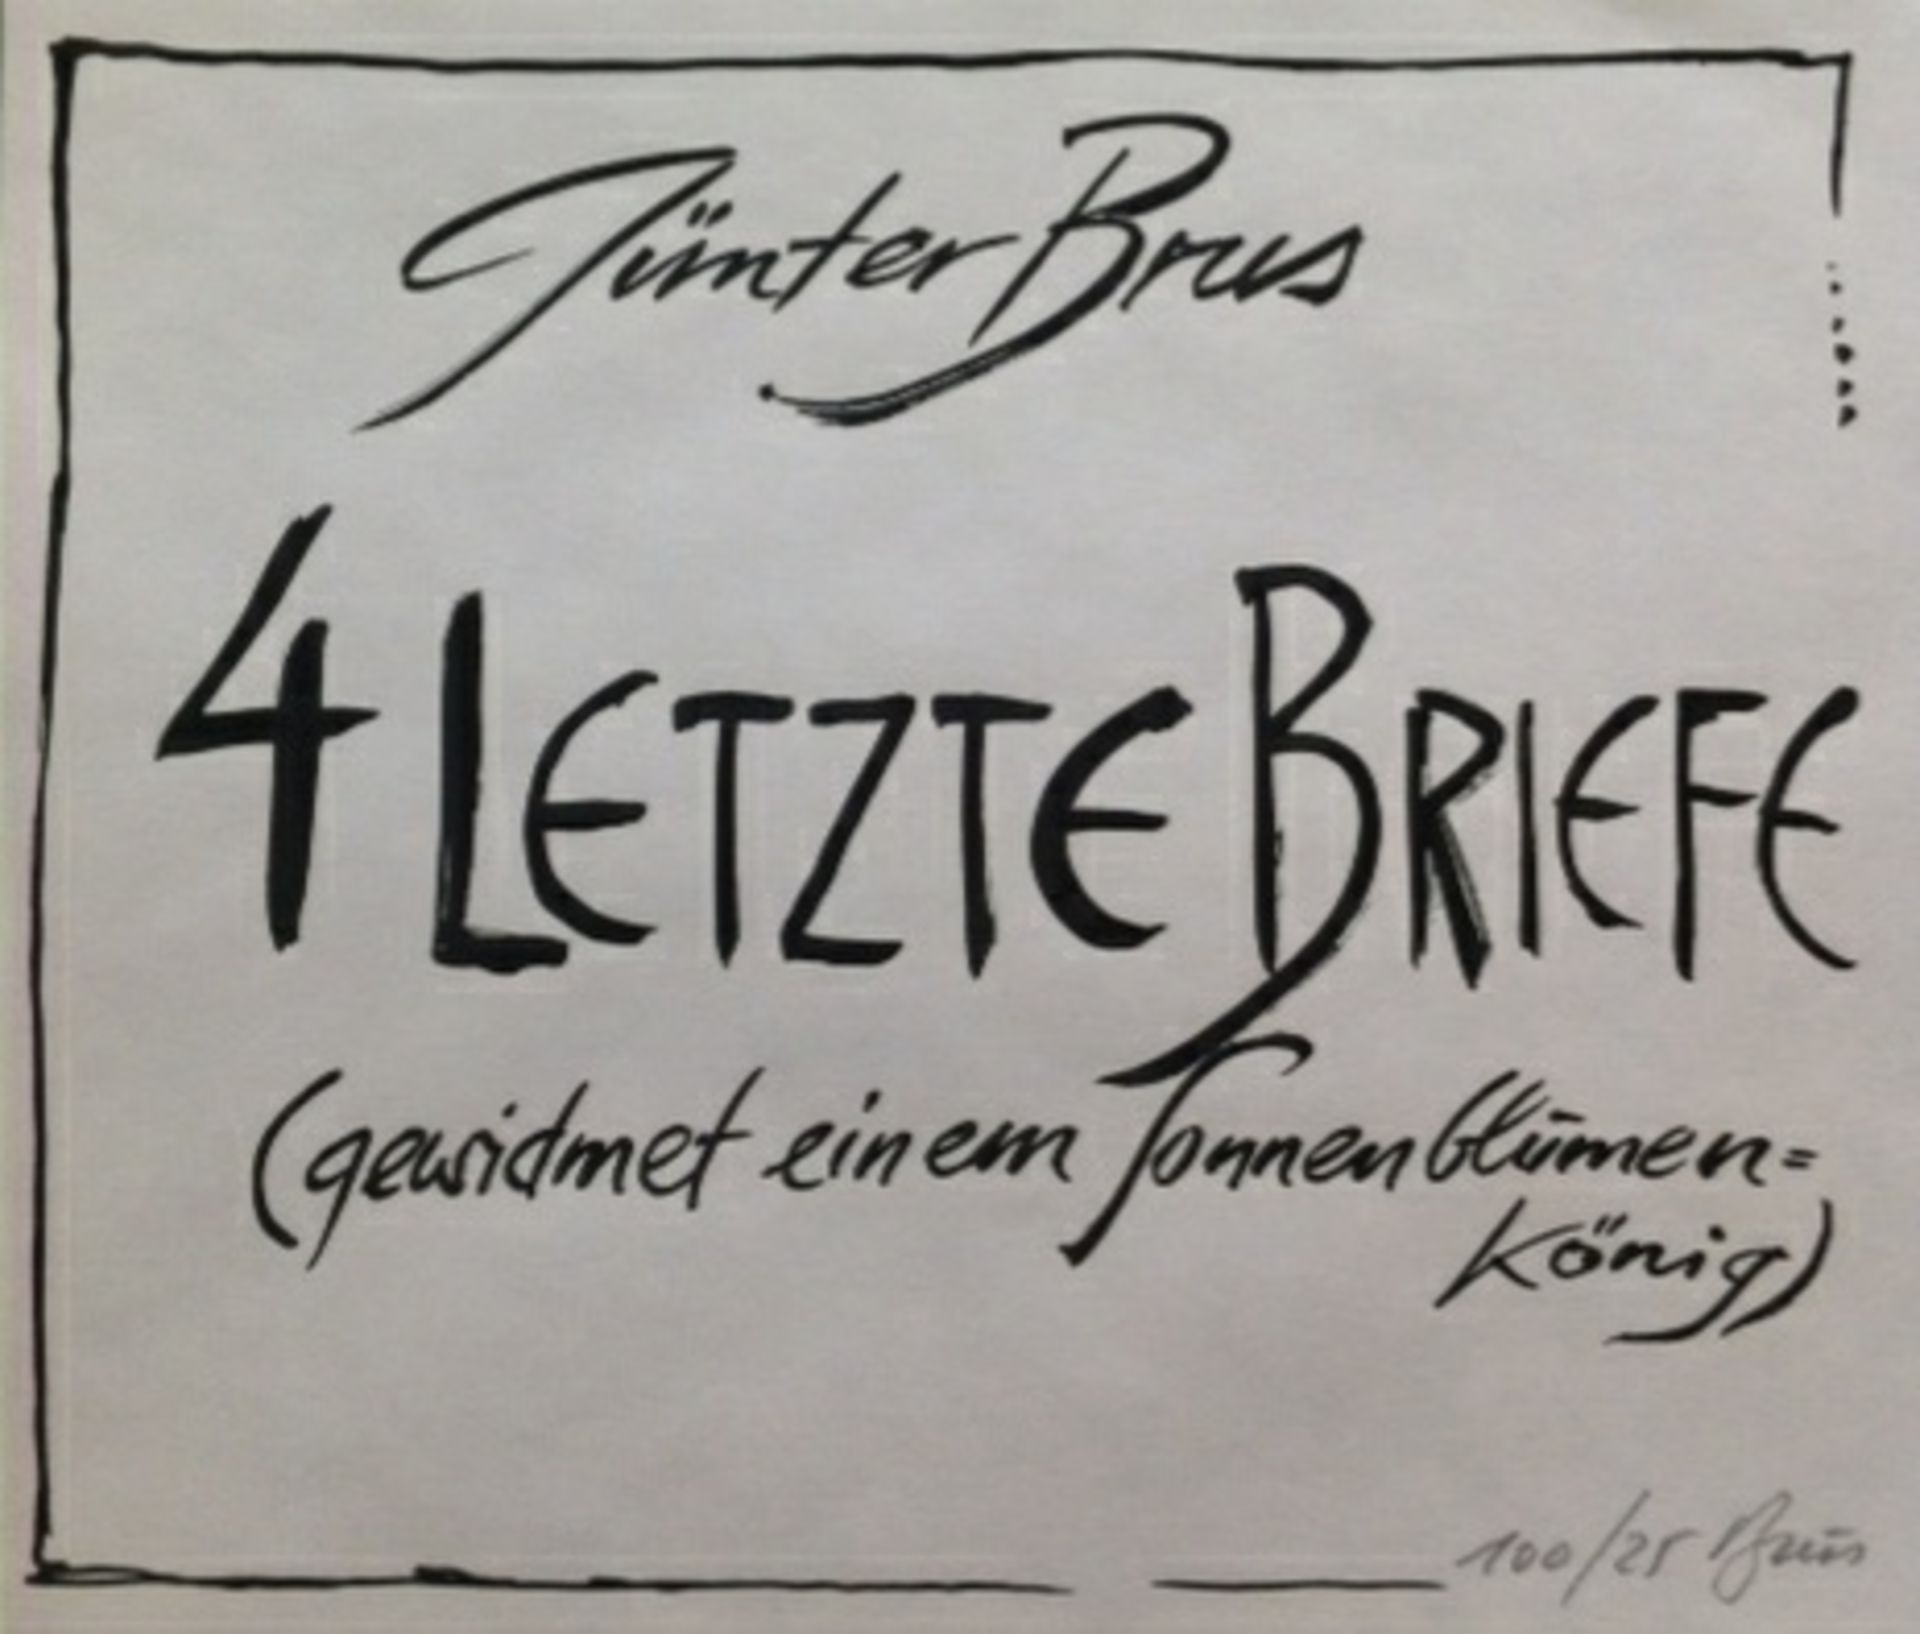 Brus Güntergeb. 19384 letzte Briefe1984/85Lithographie, 5 Blätter aus der Mappe "Vincent" - Signiert - Image 5 of 6